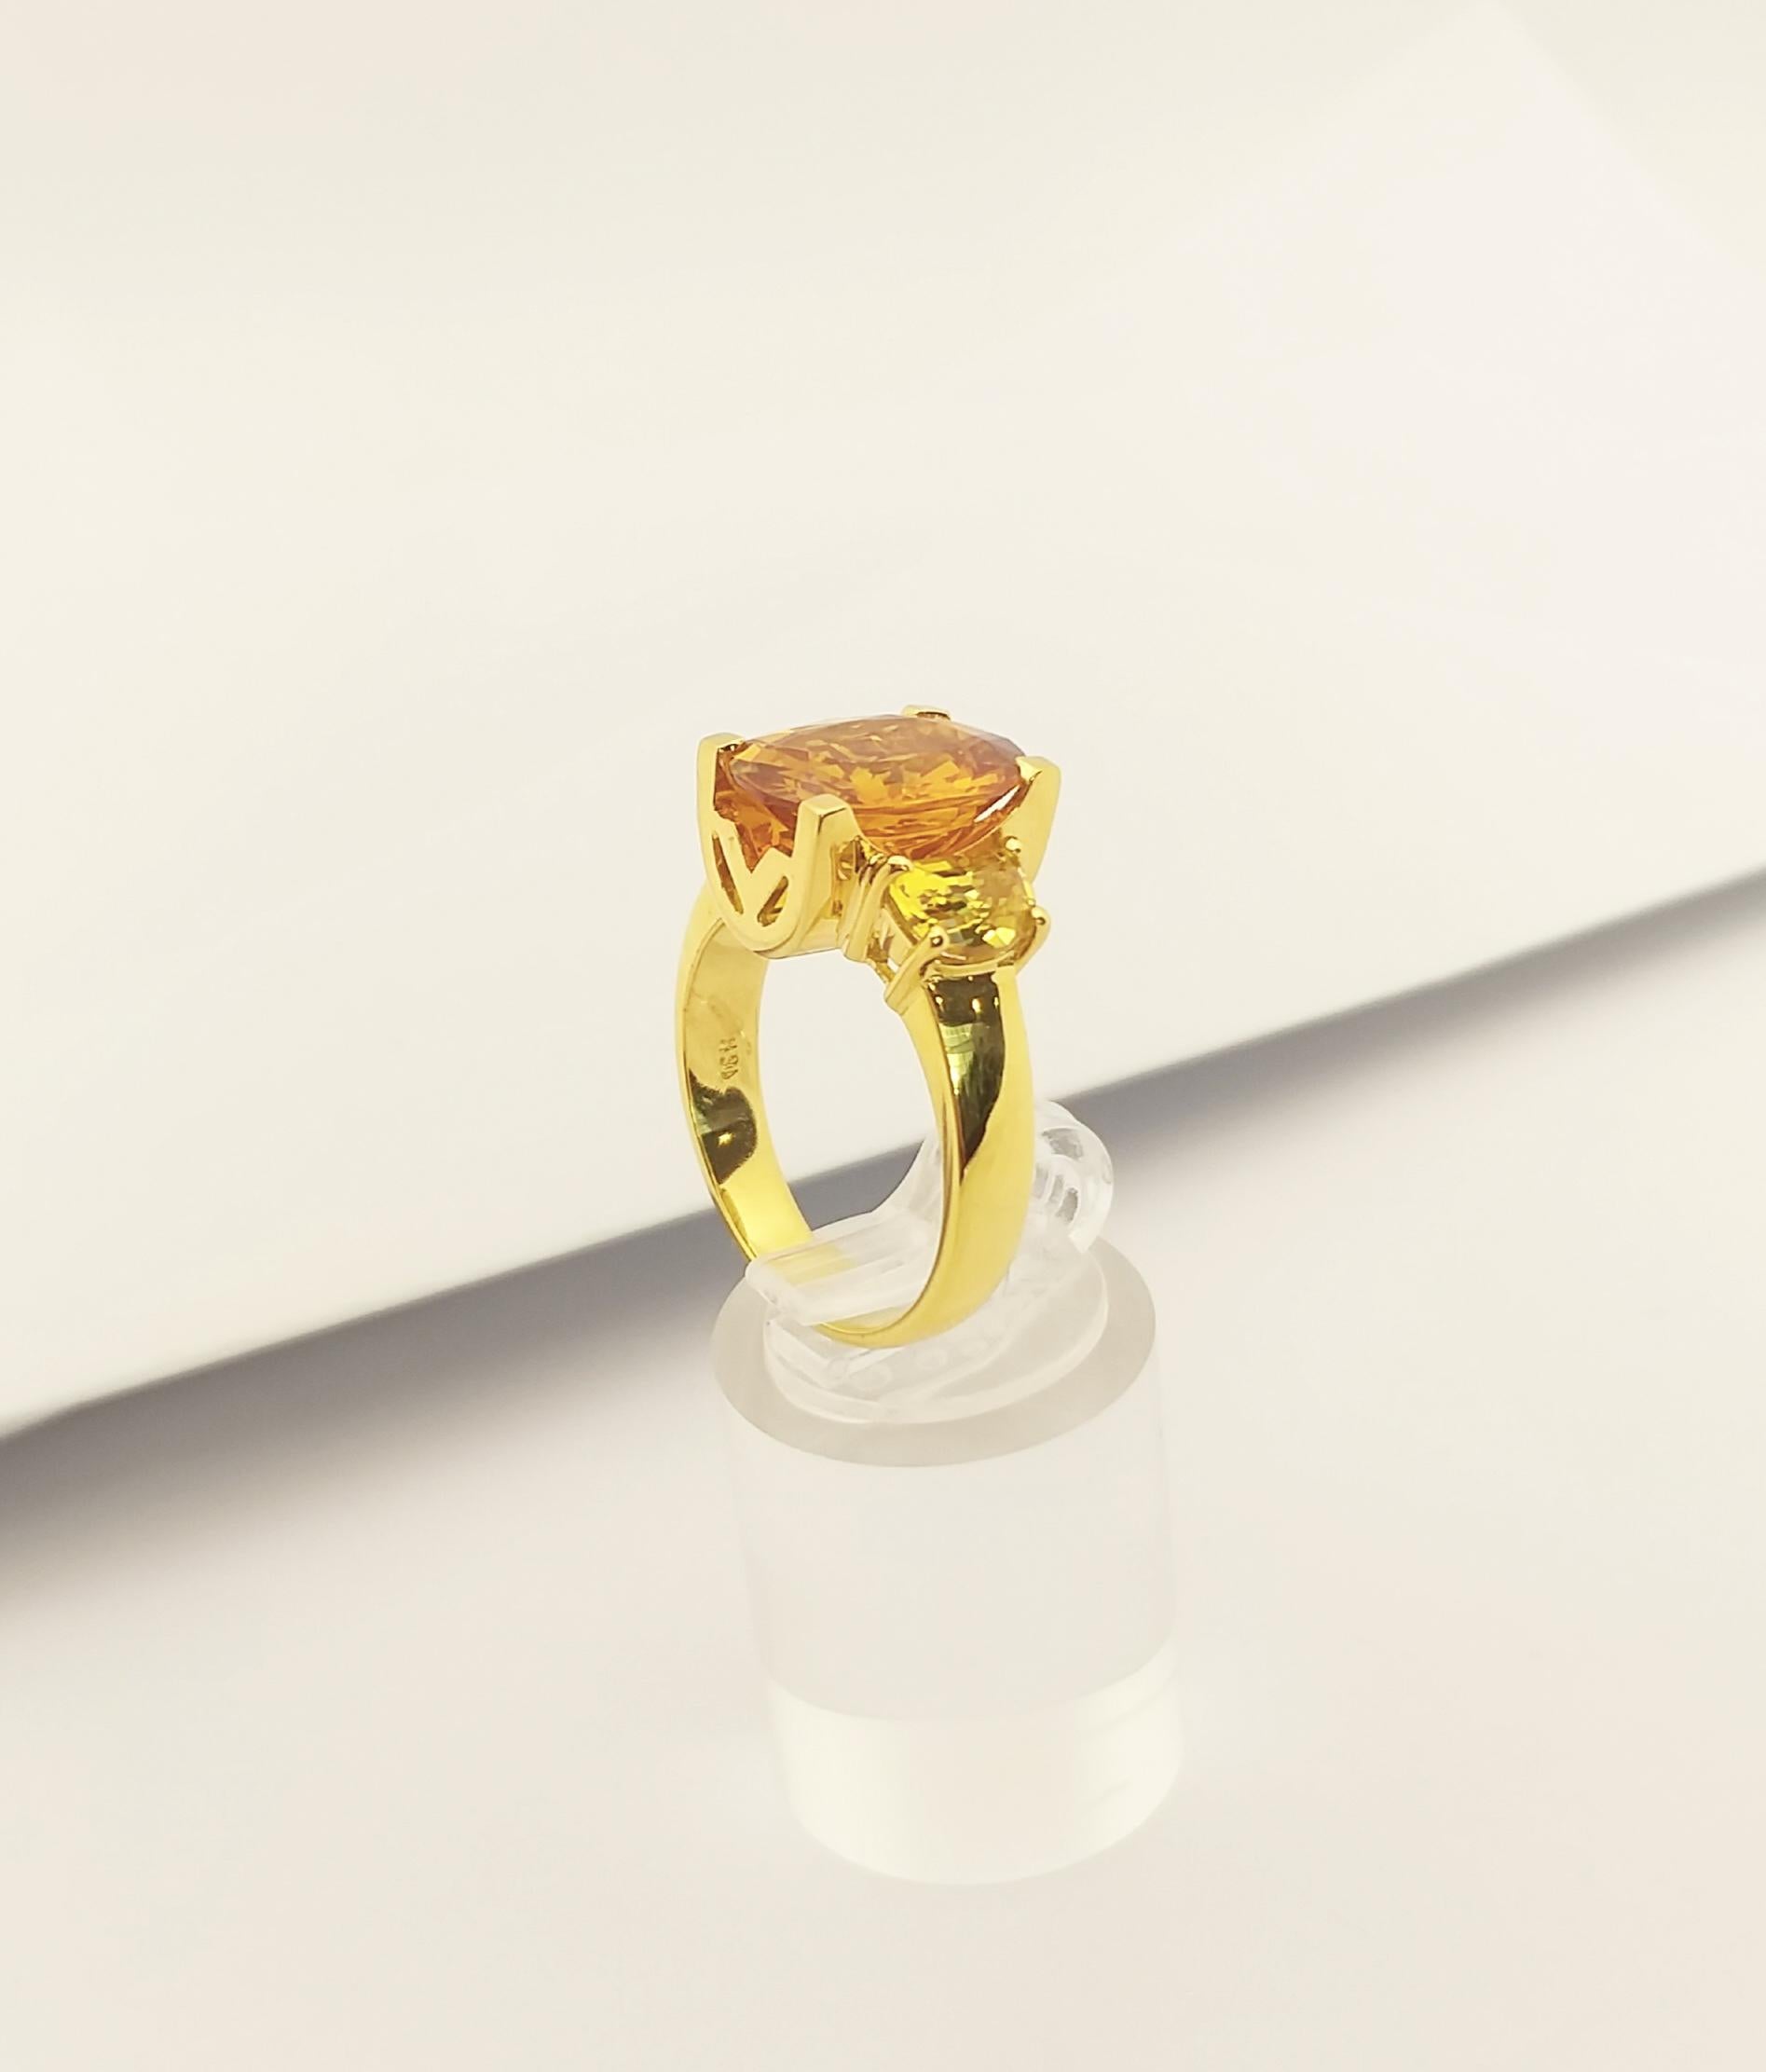 Saphir jaune 5,46 carats et saphir jaune 1,87 carats Bague en or 18 carats

Largeur :  1,7 cm 
Longueur : 1.3 cm
Taille de l'anneau : 58
Poids total : 11,93 grammes

